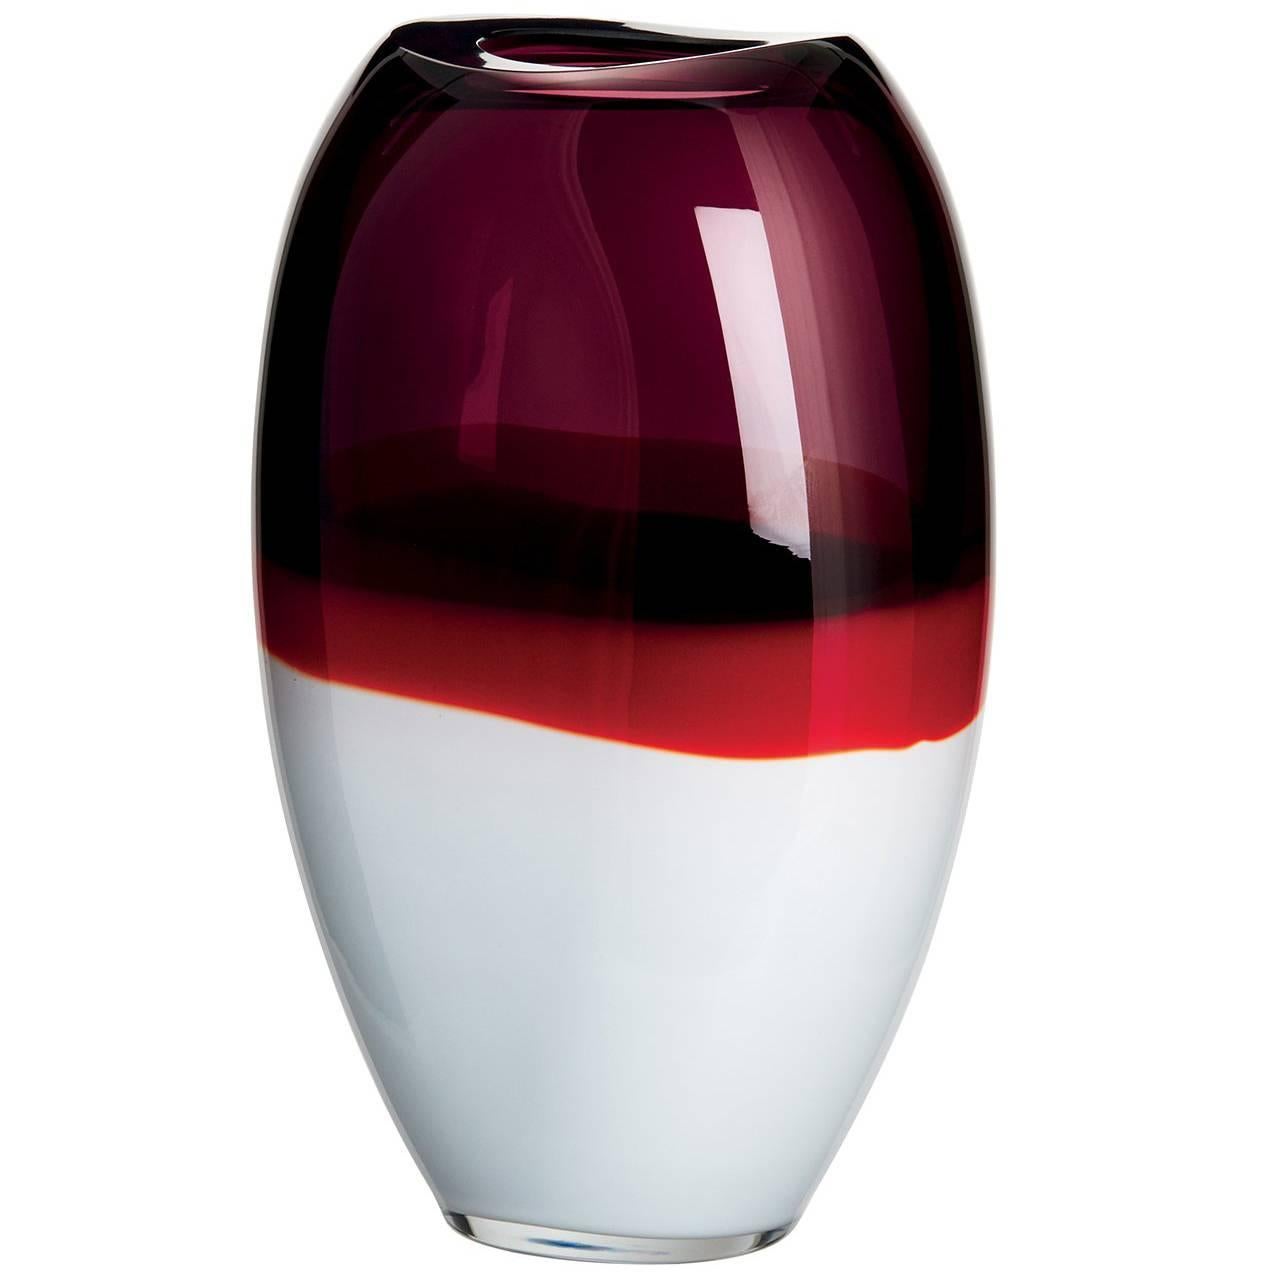 Enson Carlo Moretti Contemporary Mouth Blown Murano Glass Vase For Sale